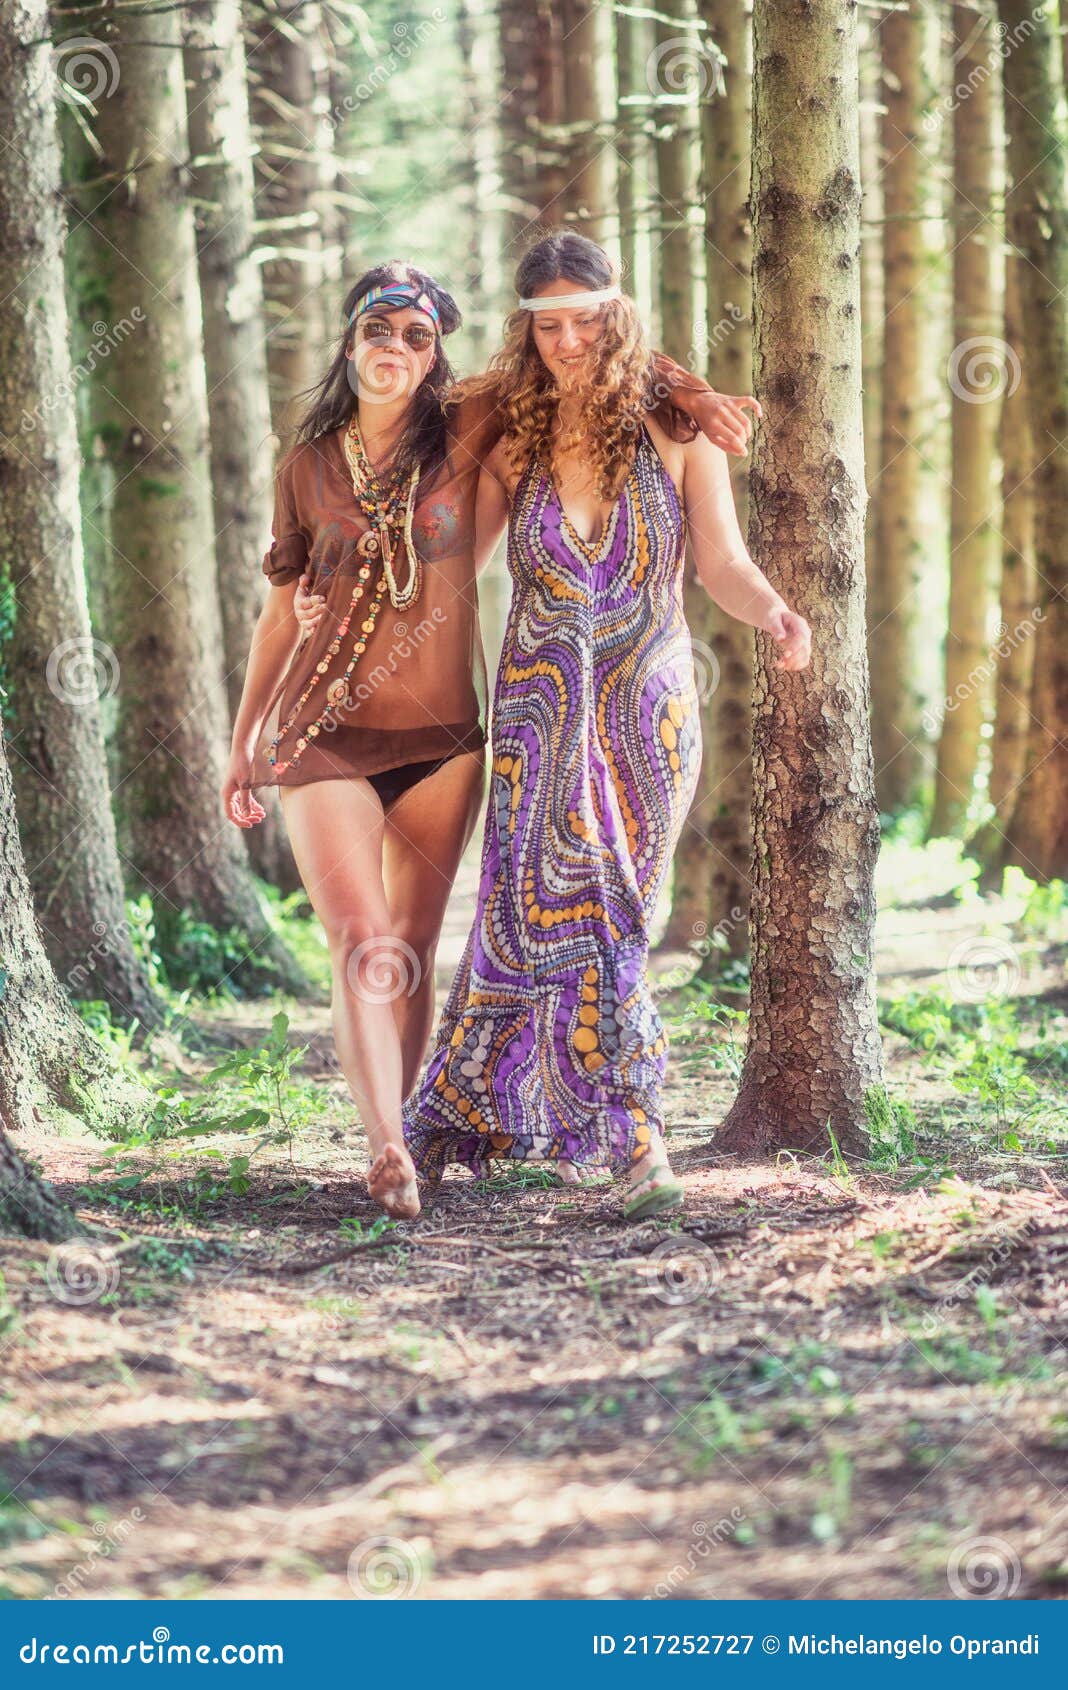 Mulheres Do Estilo Hippie Caminham Abraçadas Na Floresta Imagem de